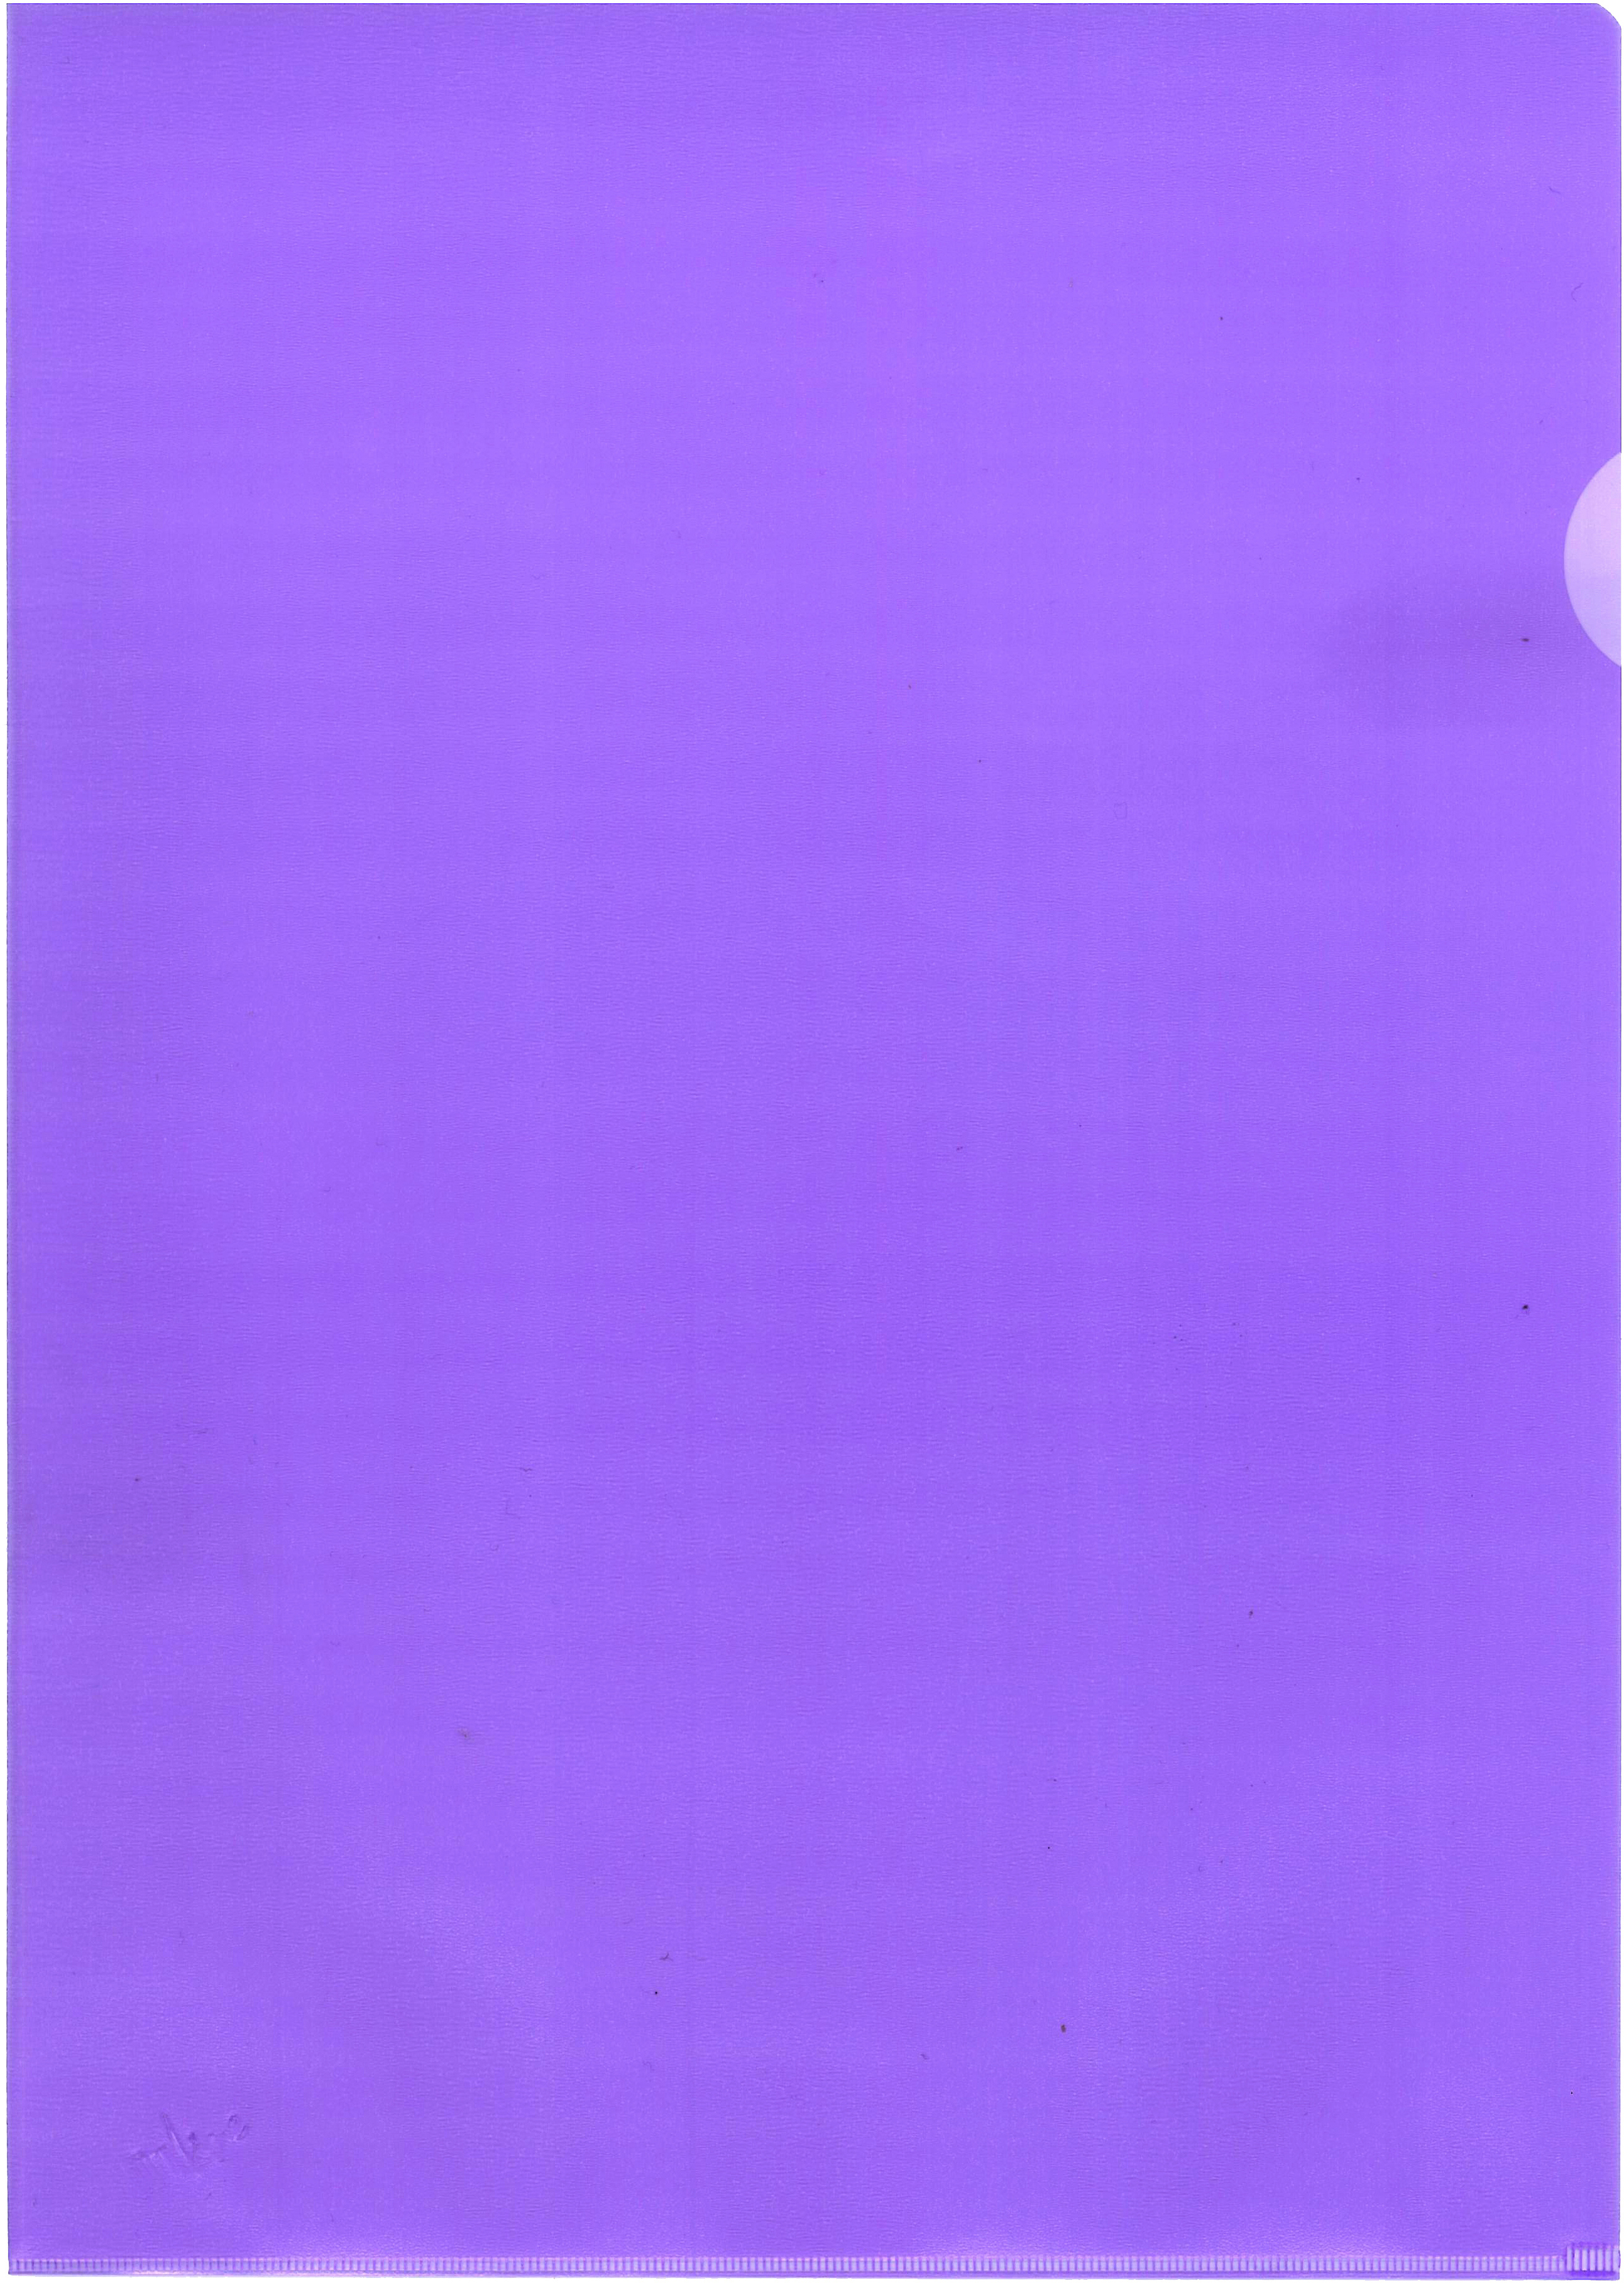 BÜROLINE Sichtmappen A4 620100 violett, matt 100 Stück